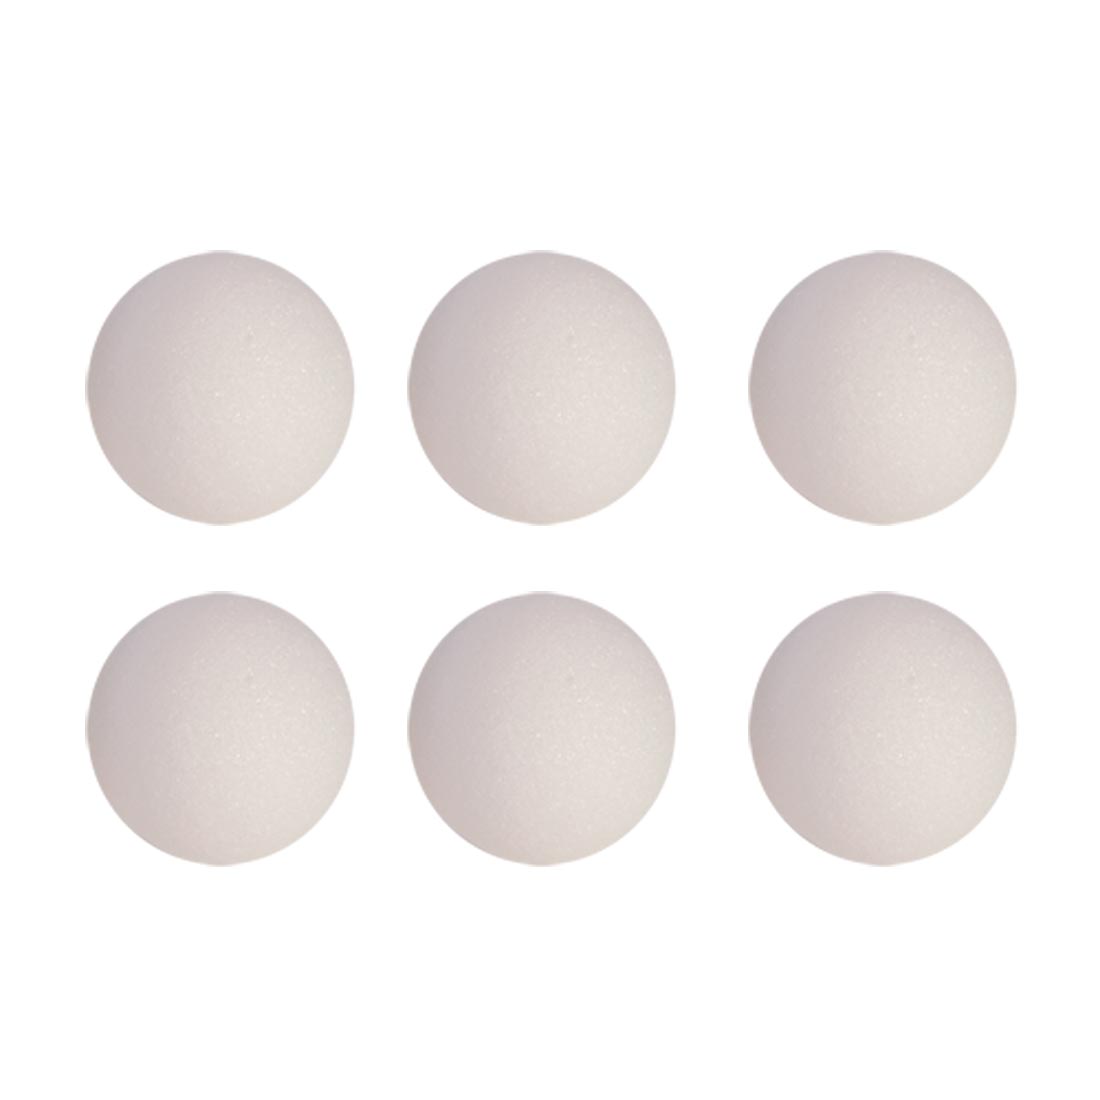 Six White Styrofoam Balls